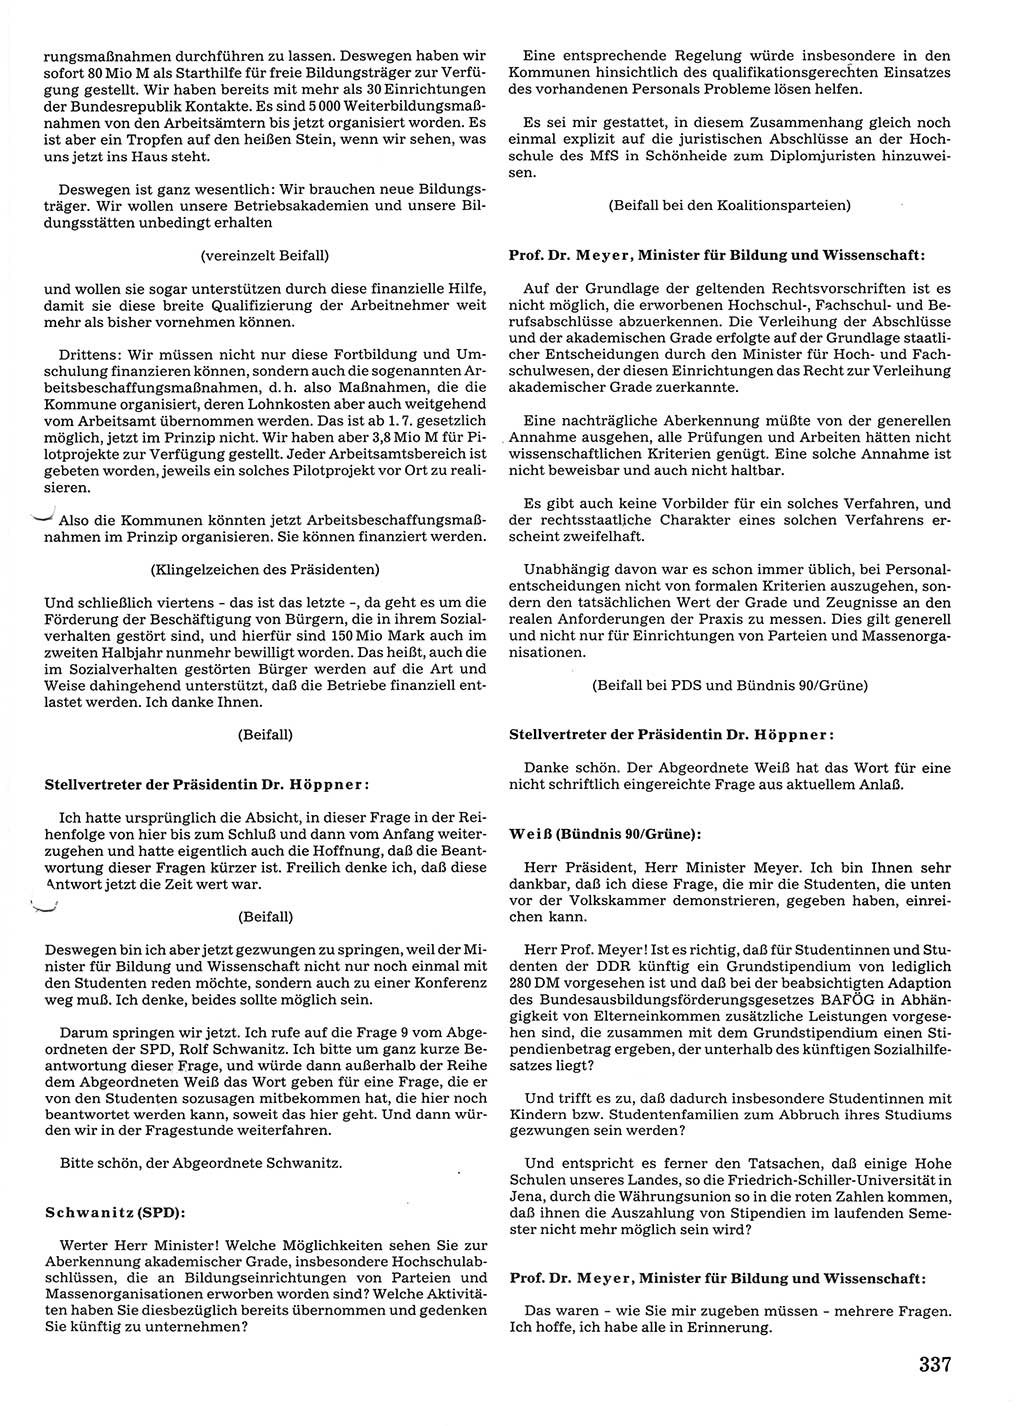 Tagungen der Volkskammer (VK) der Deutschen Demokratischen Republik (DDR), 10. Wahlperiode 1990, Seite 337 (VK. DDR 10. WP. 1990, Prot. Tg. 1-38, 5.4.-2.10.1990, S. 337)